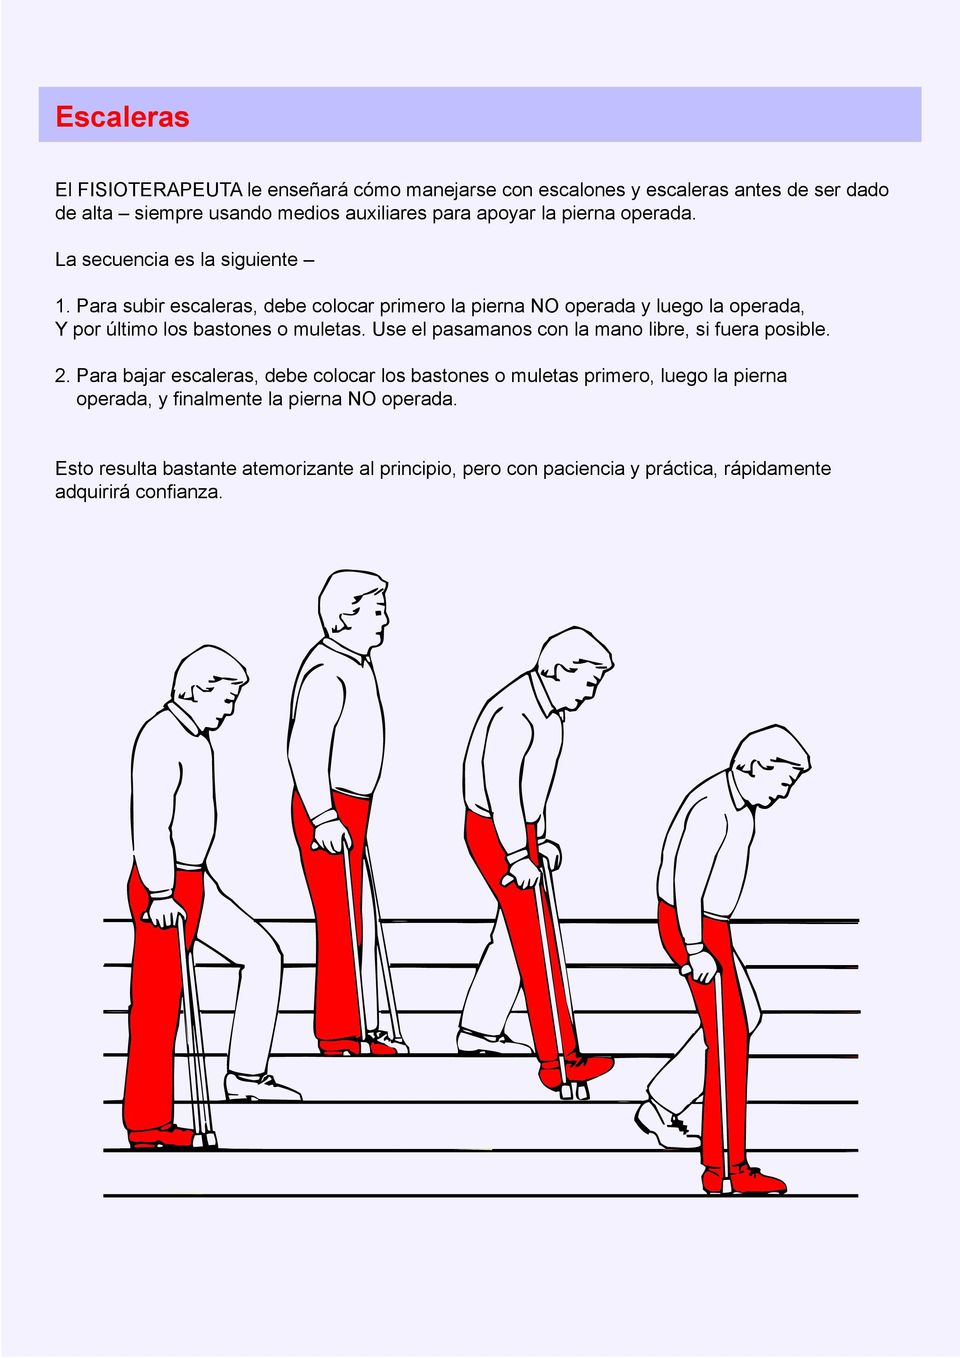 Para subir escaleras, debe colocar primero la pierna NO operada y luego la operada, Y por último los bastones o muletas.